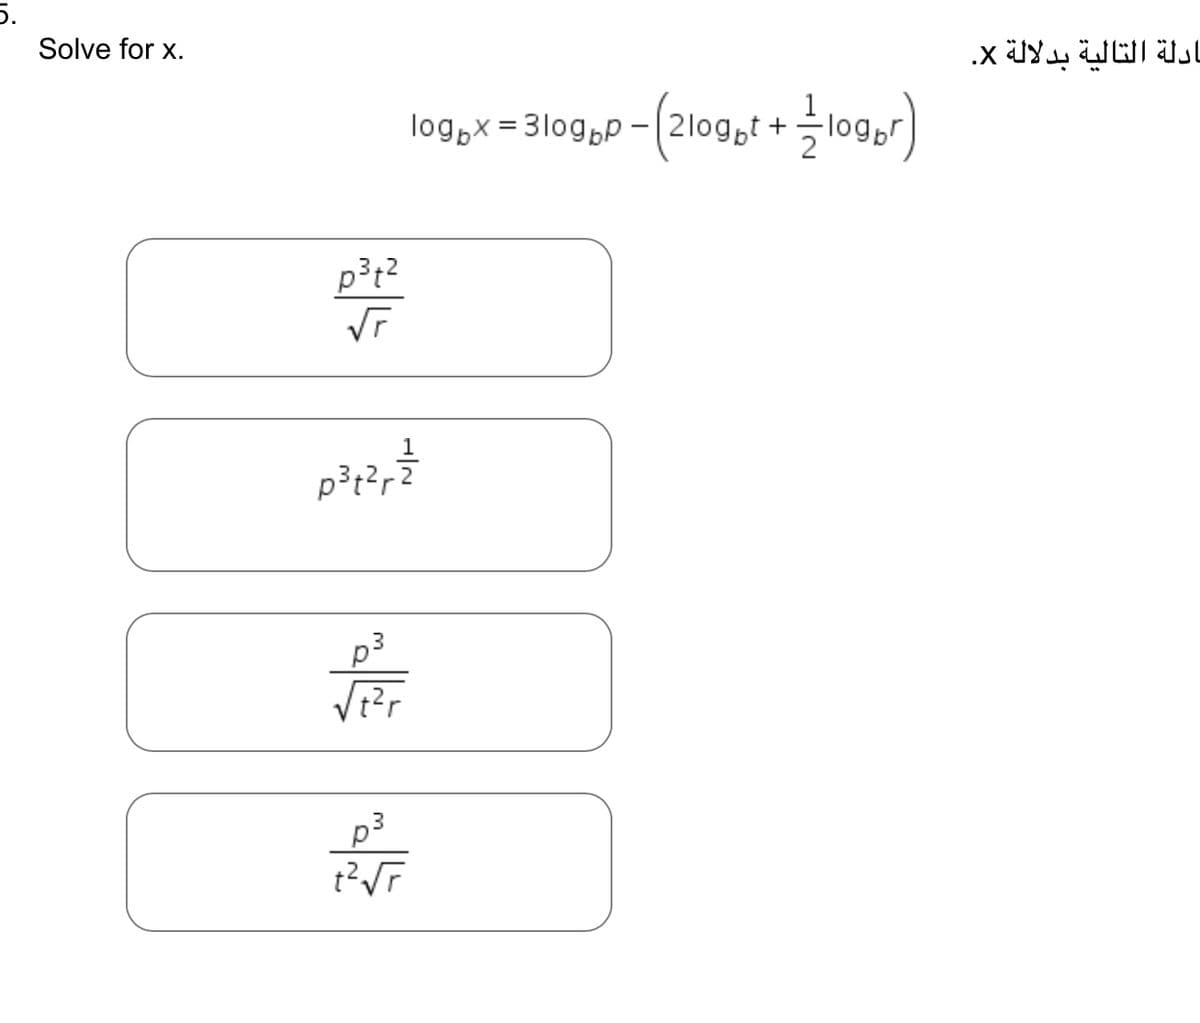 5.
Solve for x.
p3t2
VT
p302,3
p3
/t2r
1090 x = 3109pp - (2logot + loger)
t2r
ادلة التالية بدلالة x.